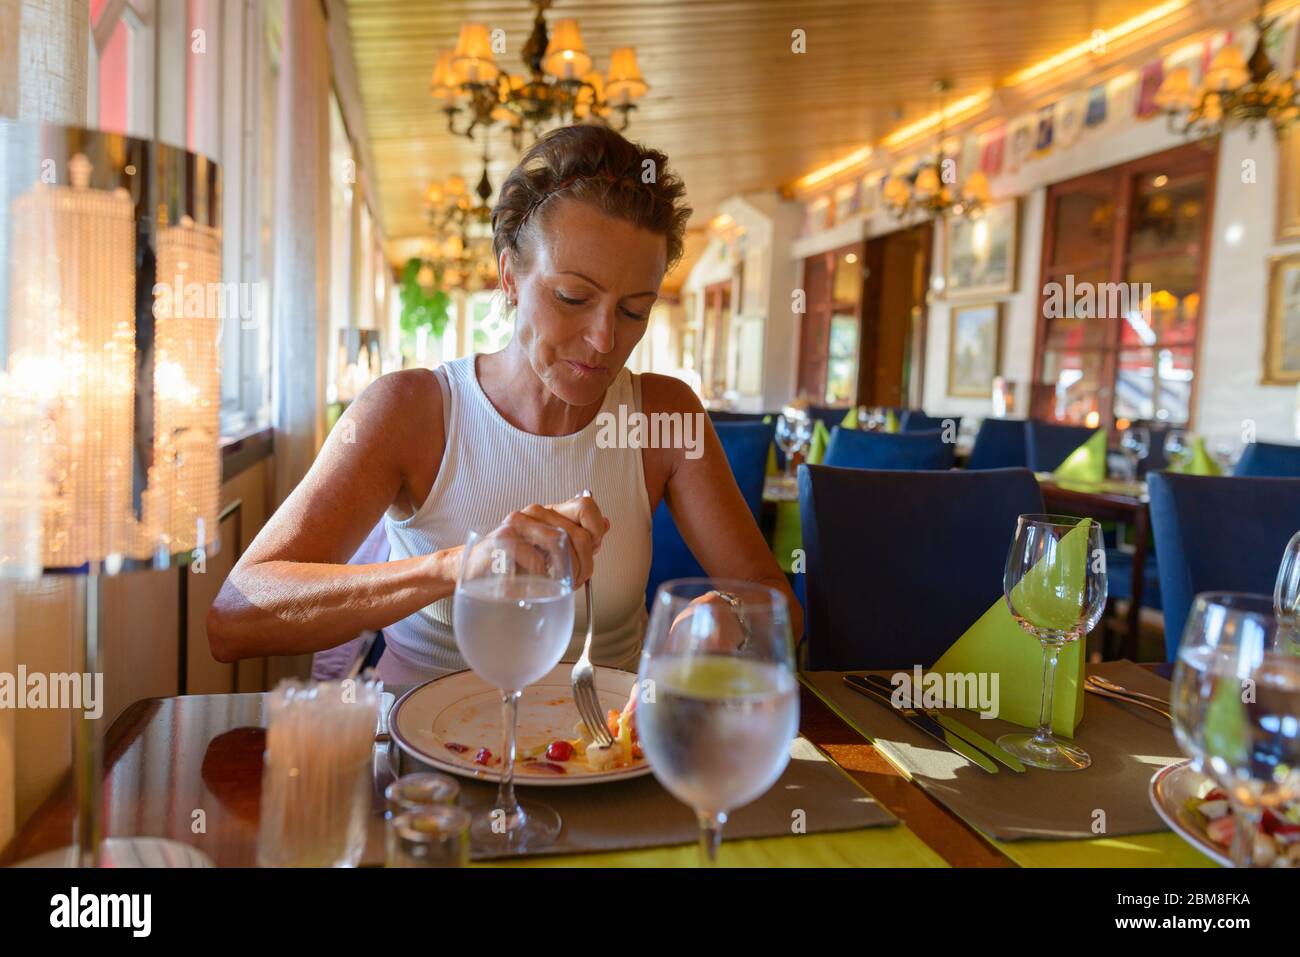 Belle femme mûre avec des cheveux courts manger au restaurant Banque D'Images